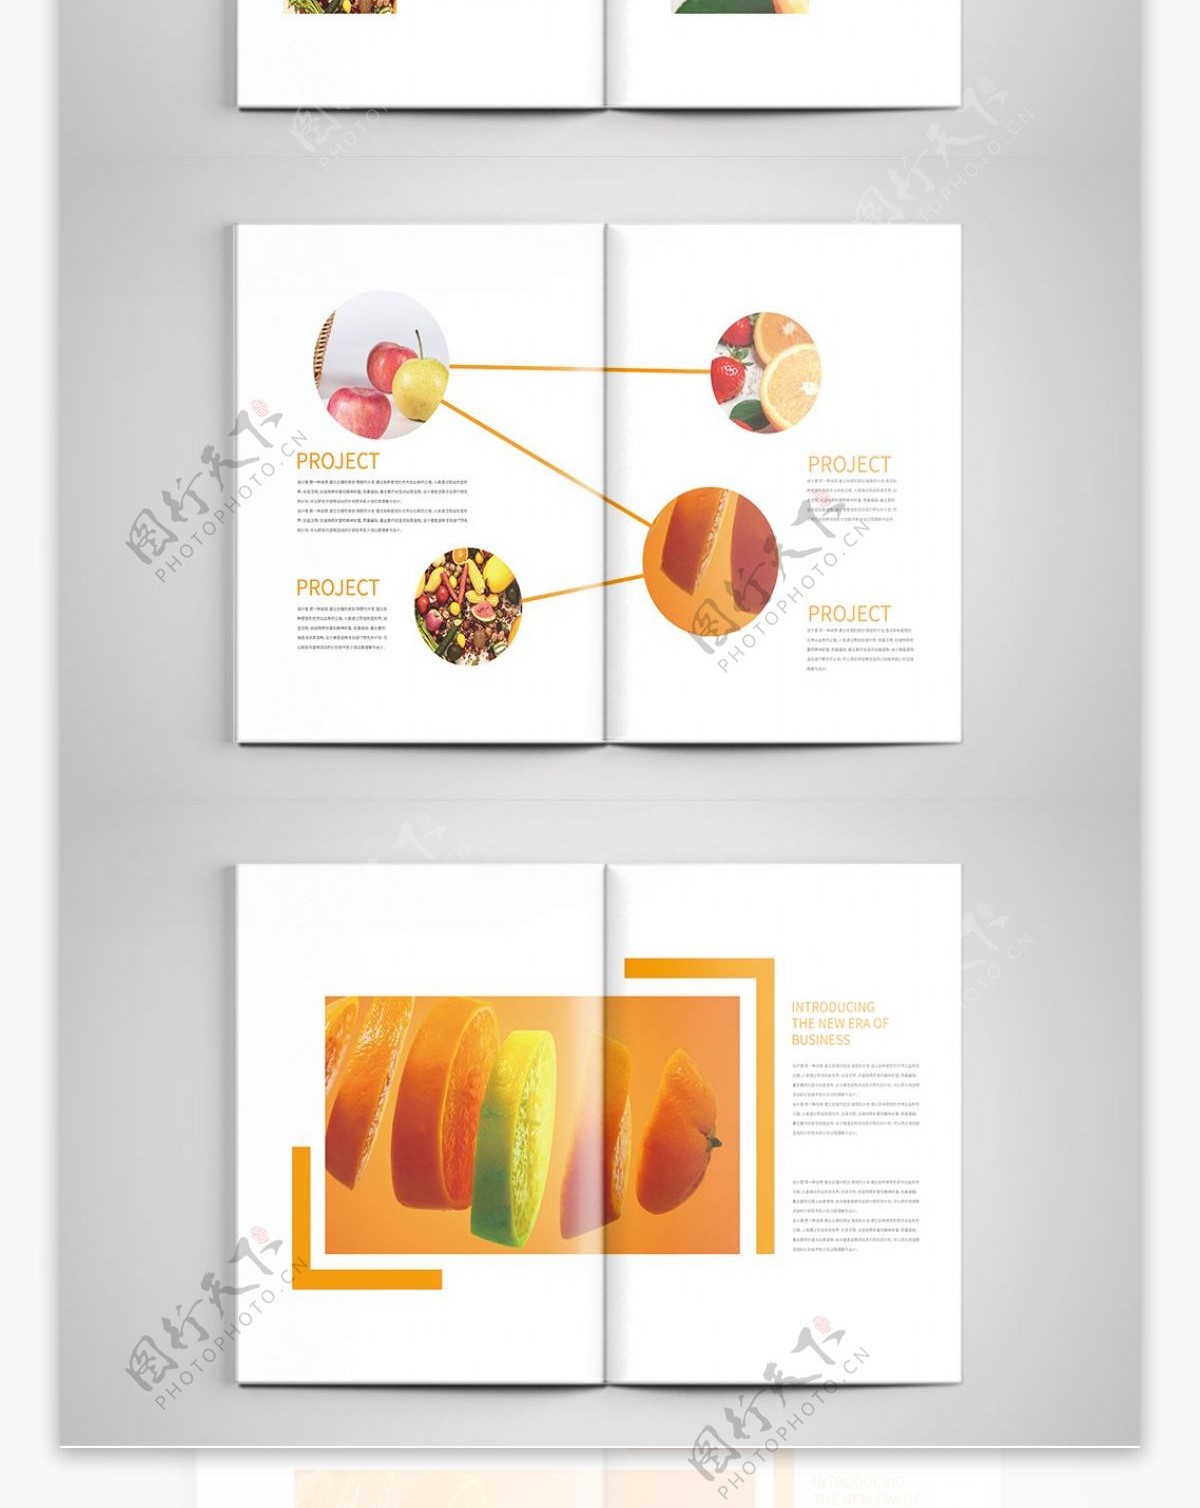 橙黄色水果画册设计